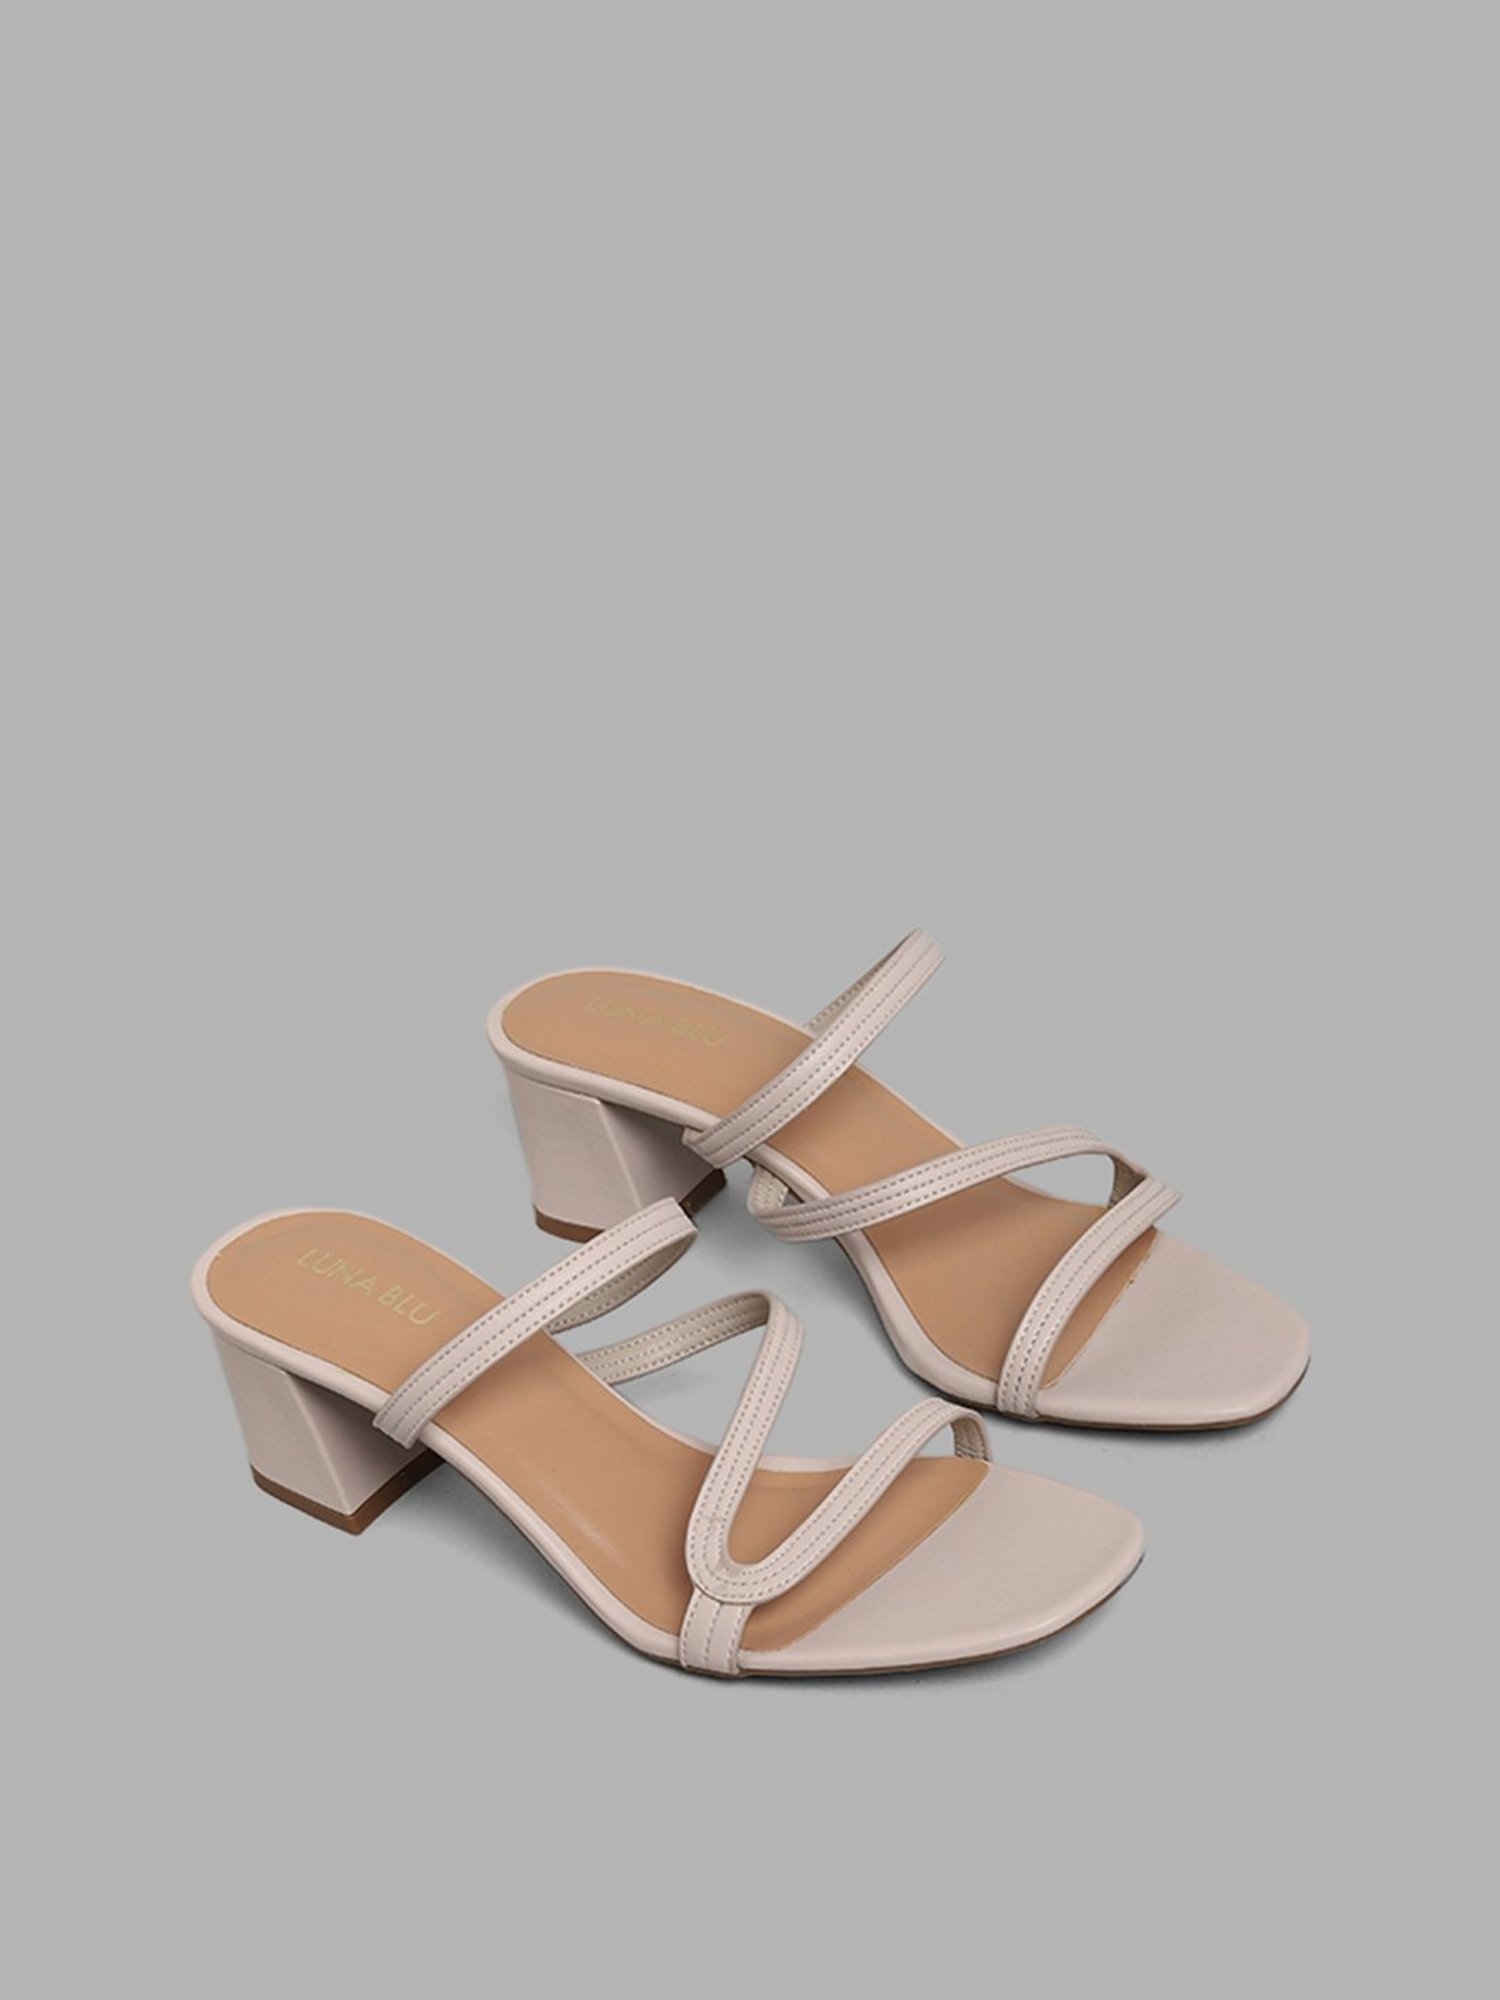 Cushionaire Blue Sandals for Women | Mercari